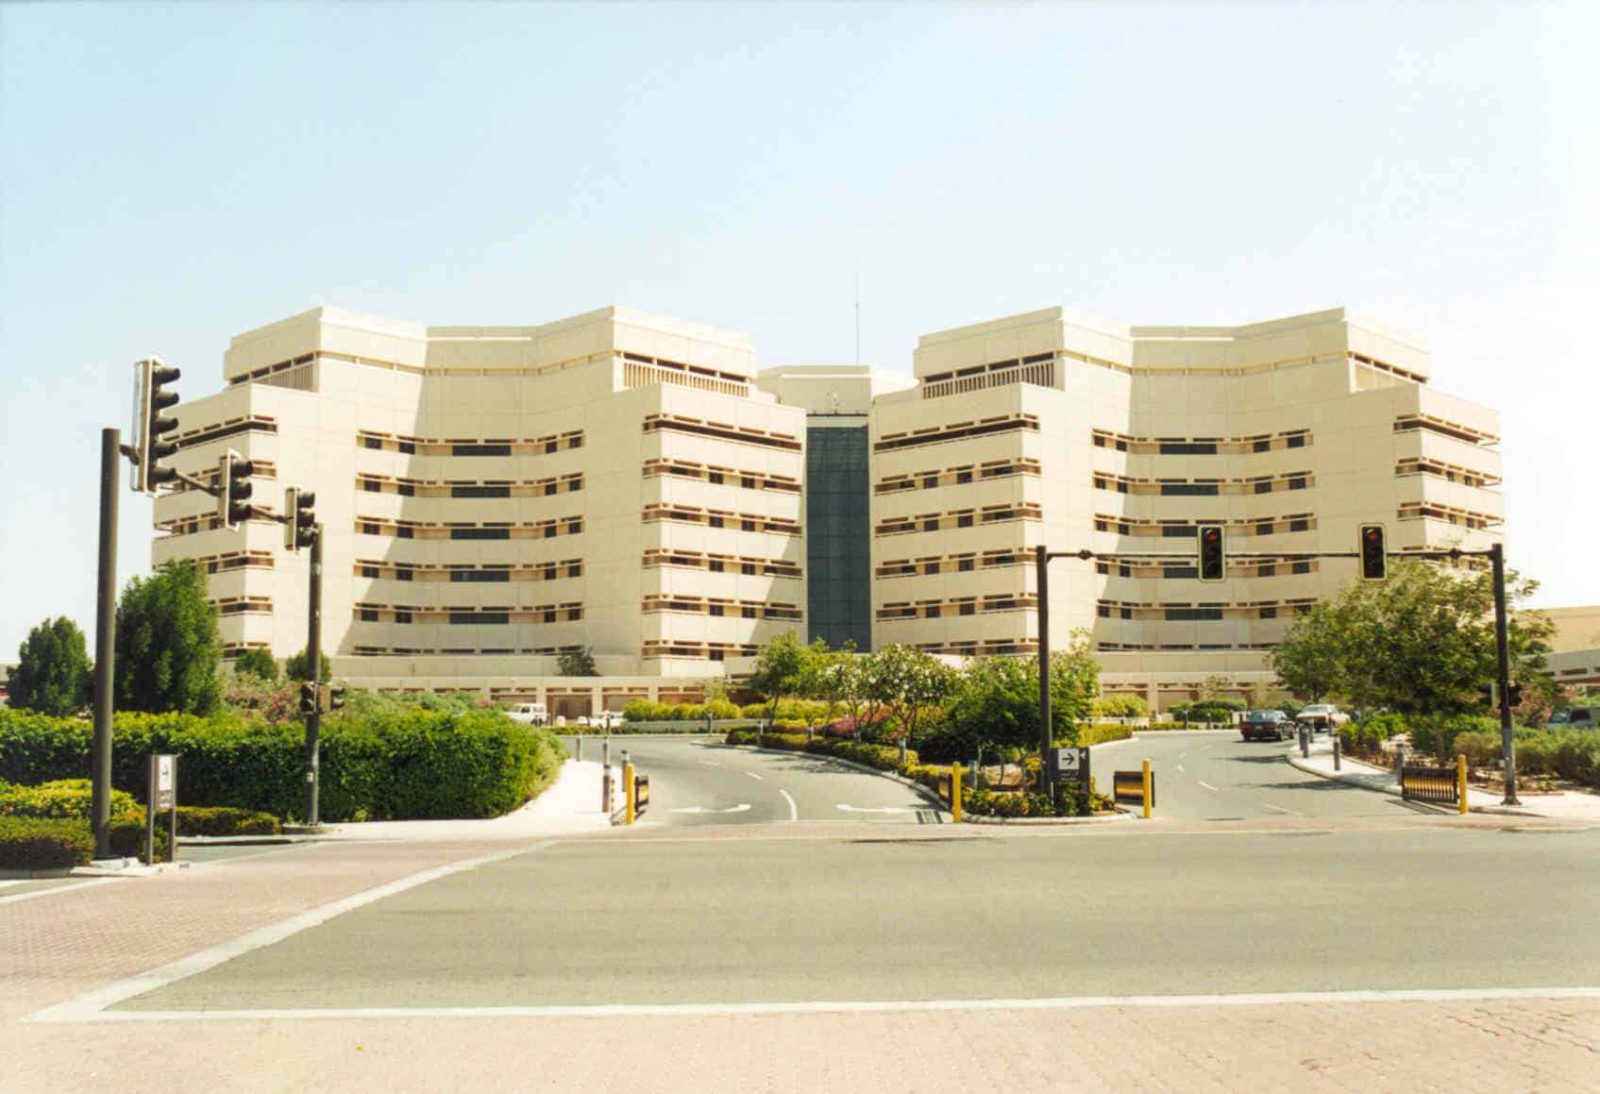 اودس جامعة الملك عبدالعزيز تسجيل الدخول والخدمات المقدمة